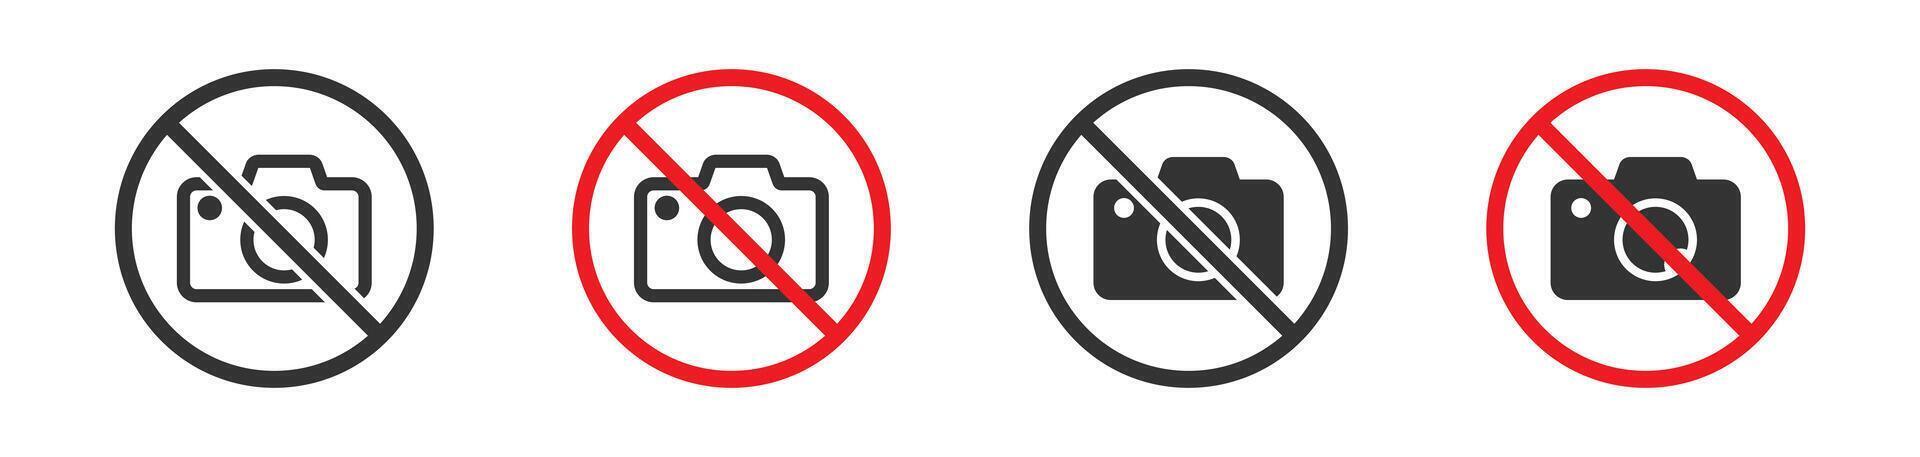 een foto verboden waarschuwing teken. Nee camera symbool. vector illustratie.